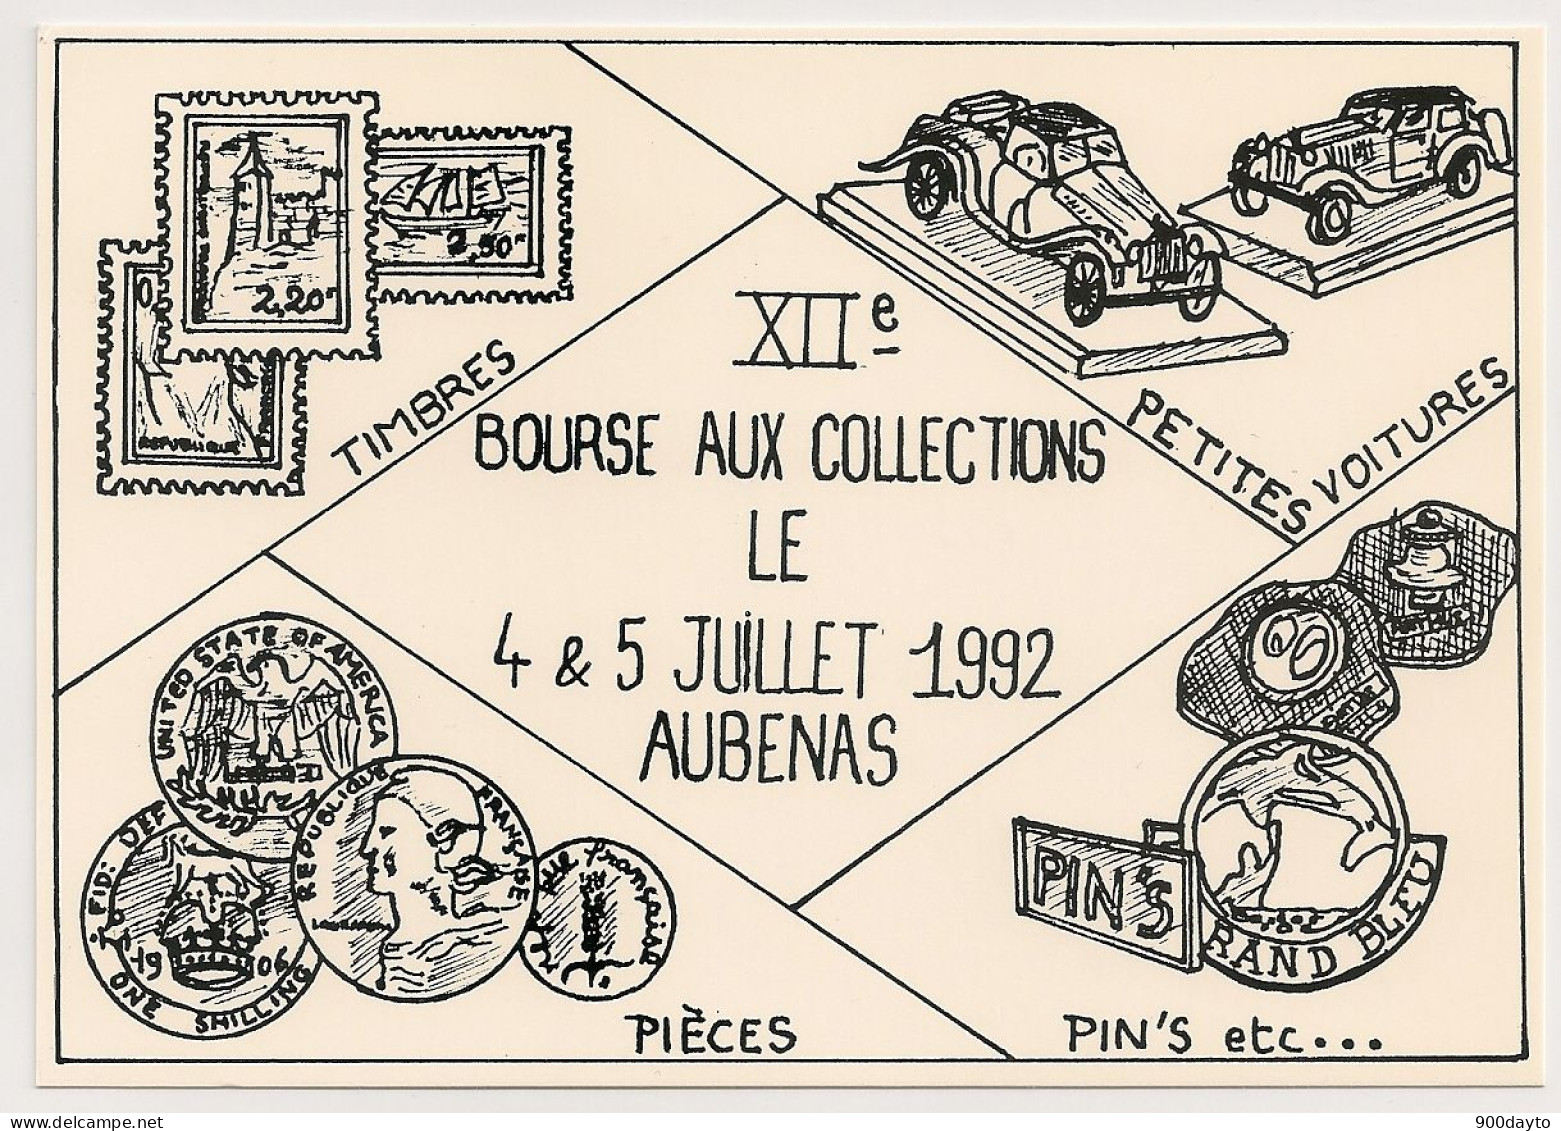 AUBENAS. XIIème Bourse Aux Collections. - Bourses & Salons De Collections